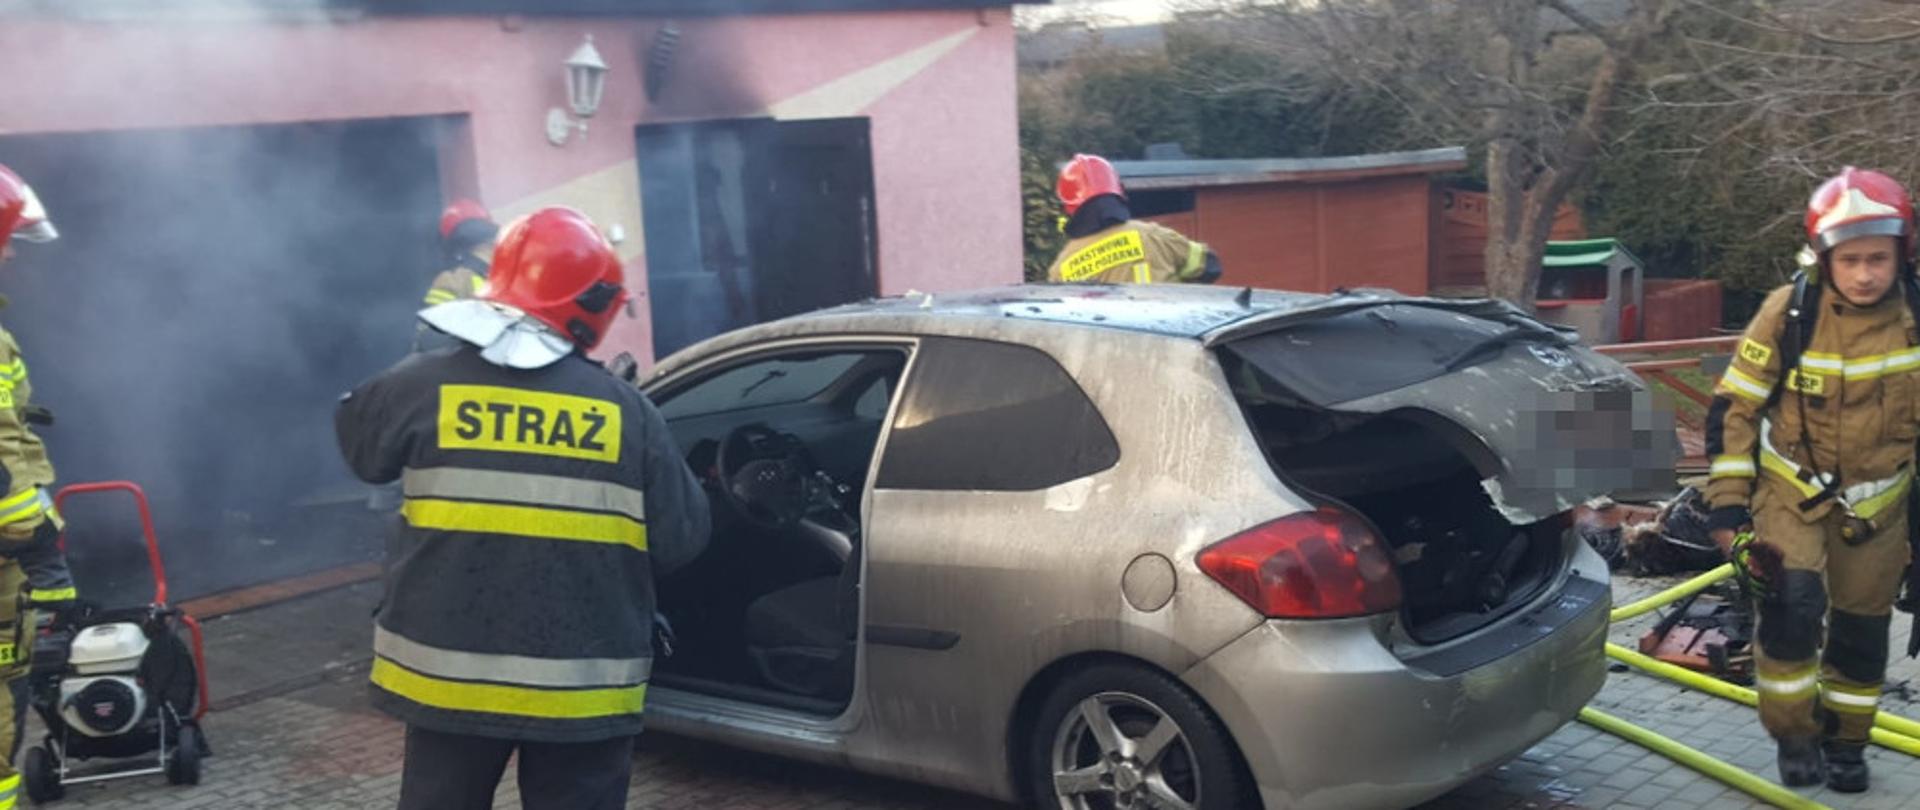 Pożar garażu w miejscowości Szczecinek, ul. Pomorska